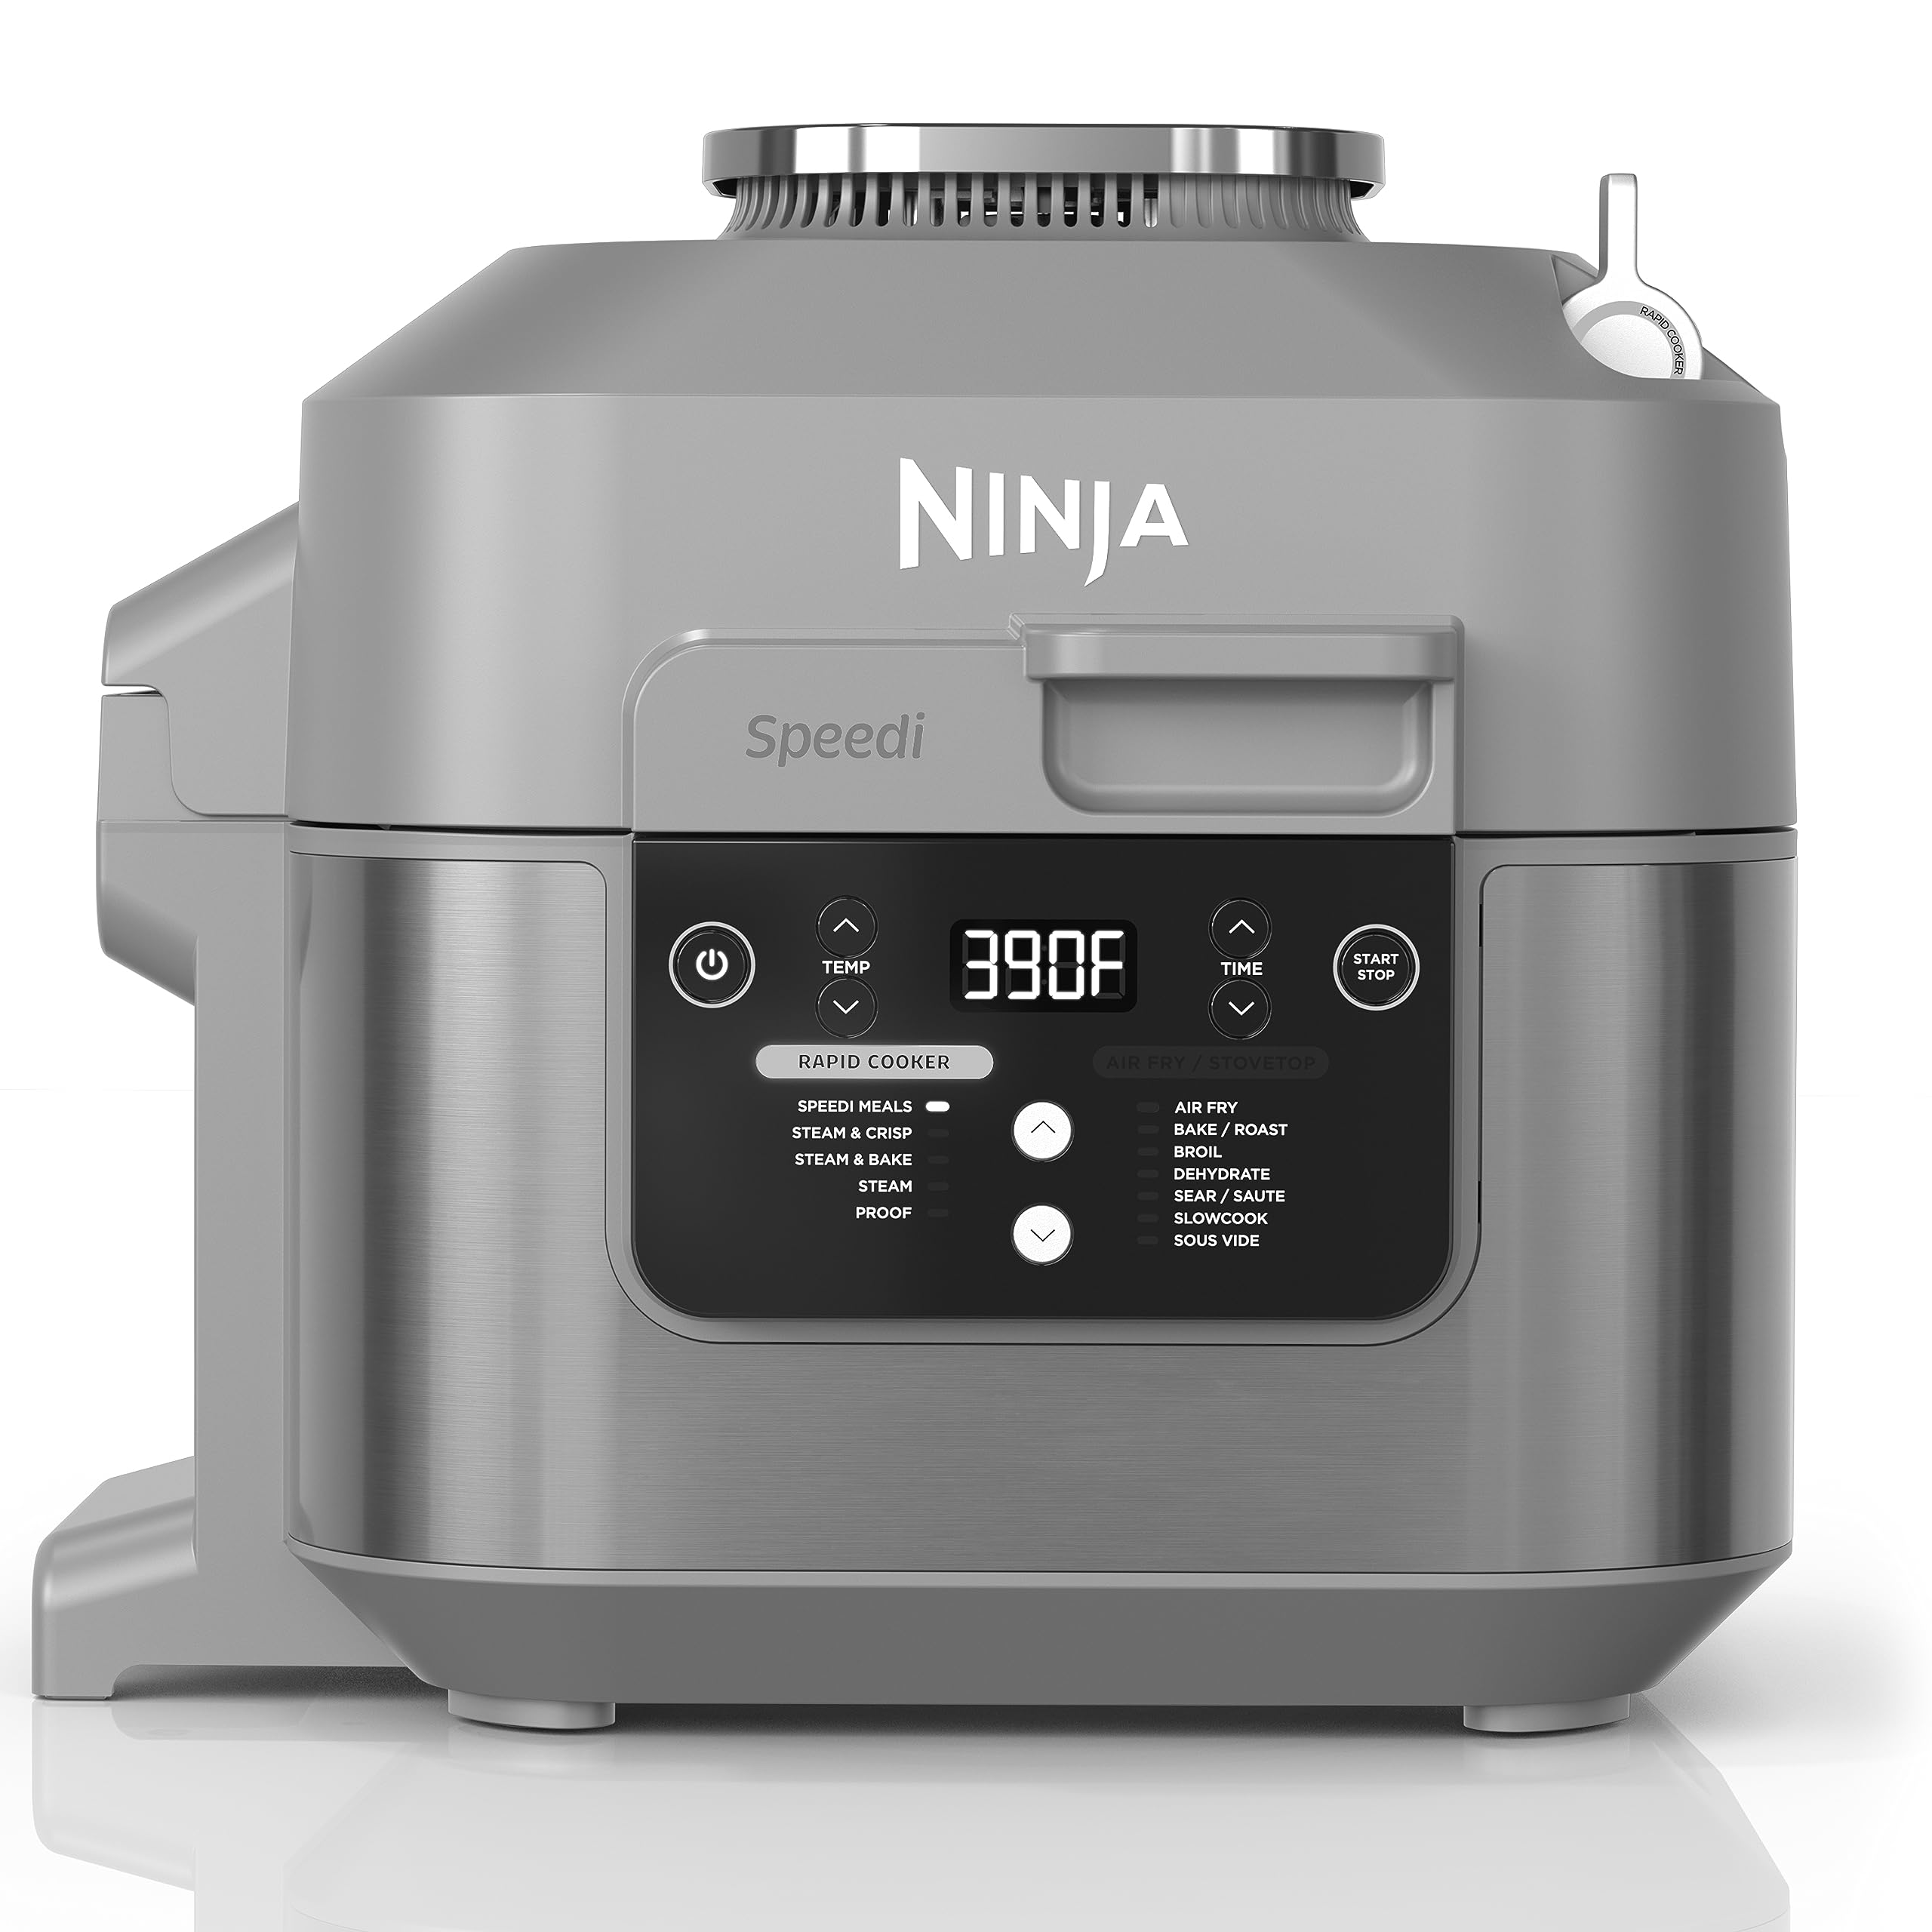  Ninja SF301 Speedi 急速クッカー & エアフライヤー、容量 6 クォート、蒸す、焼く、ロースト、焼き、炒める、スロークック、真空調理などの 12-in-1 機能、15...